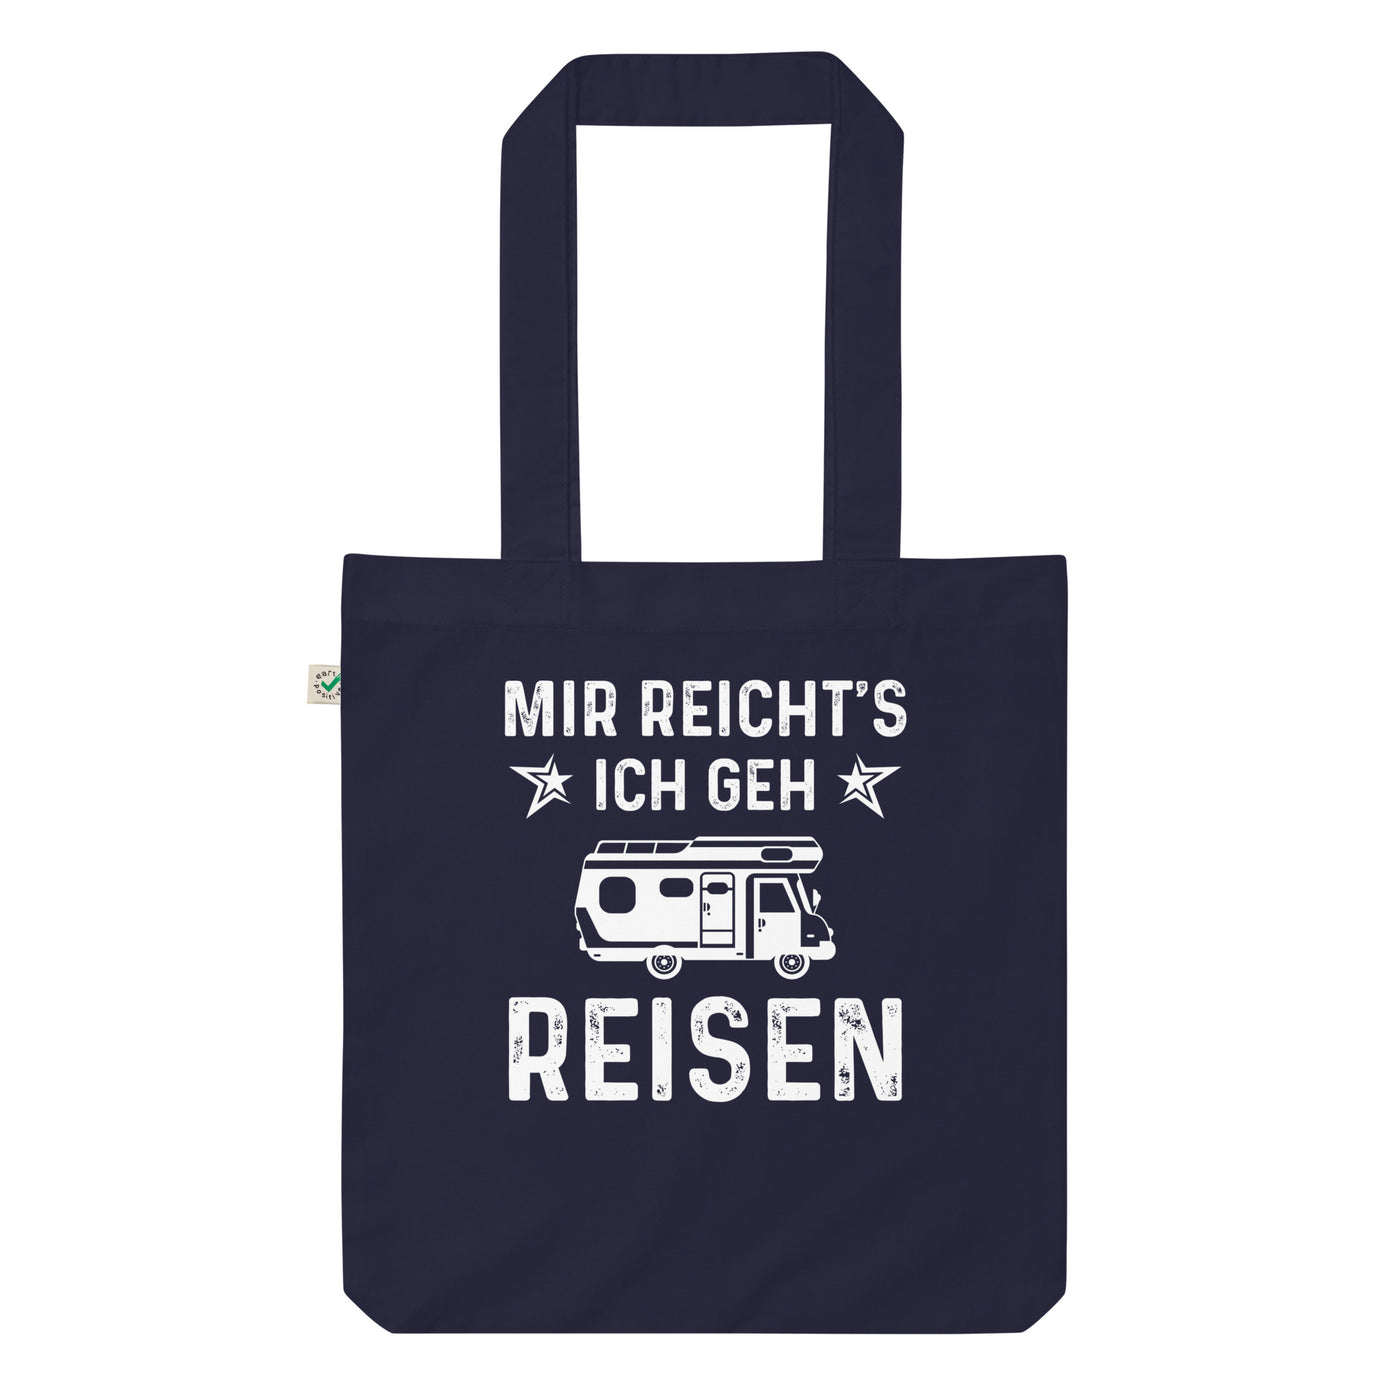 Mir Reicht'S Ich Gen Reisen - Organic Einkaufstasche camping